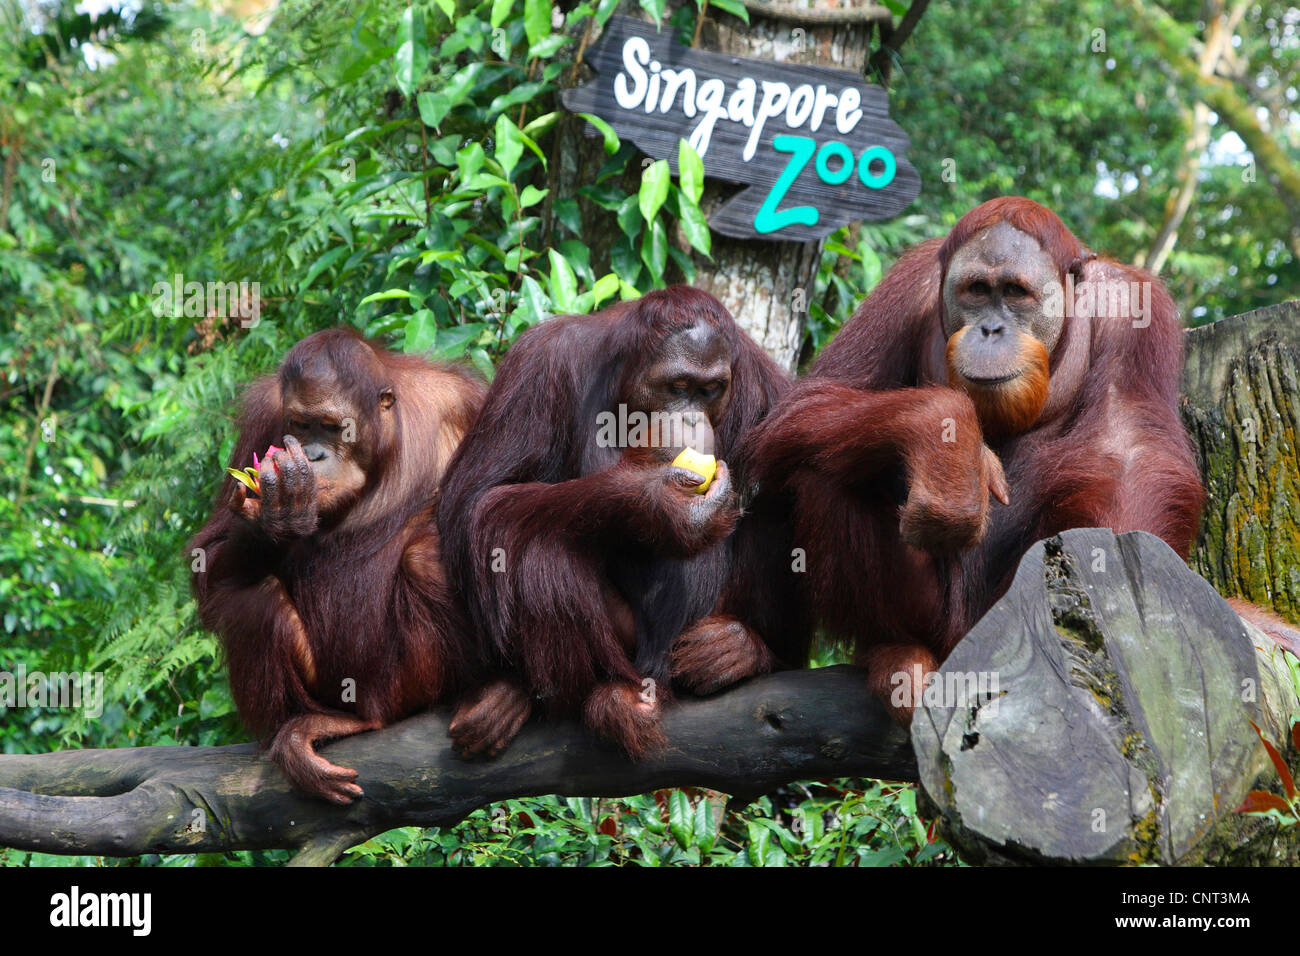 Orang-outan, l'orang-outan, l'orang-outang (Pongo pygmaeus), trois individus se nourrir Banque D'Images